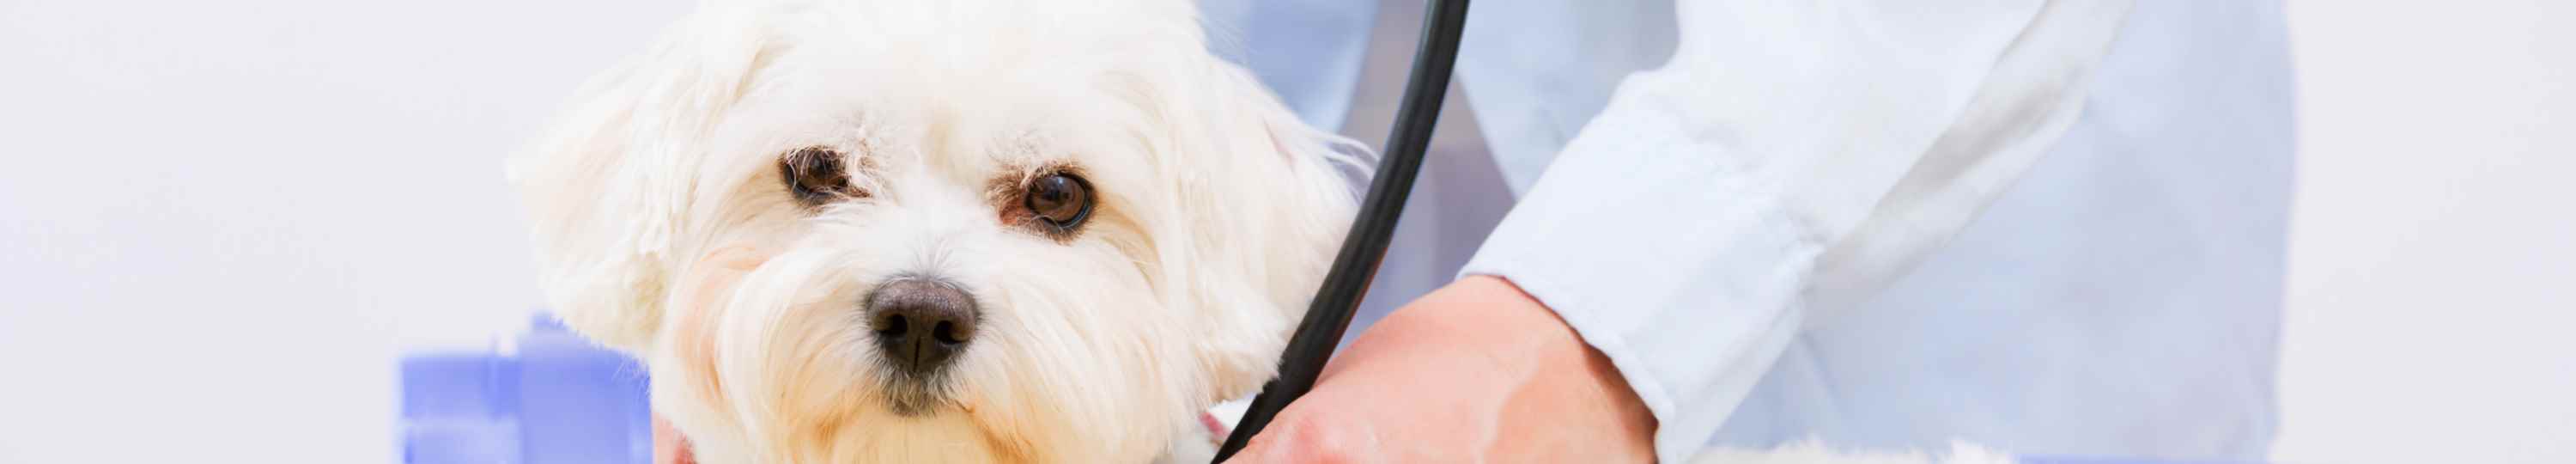 בדיקות רפואיות של כלב ע"י וטרינר